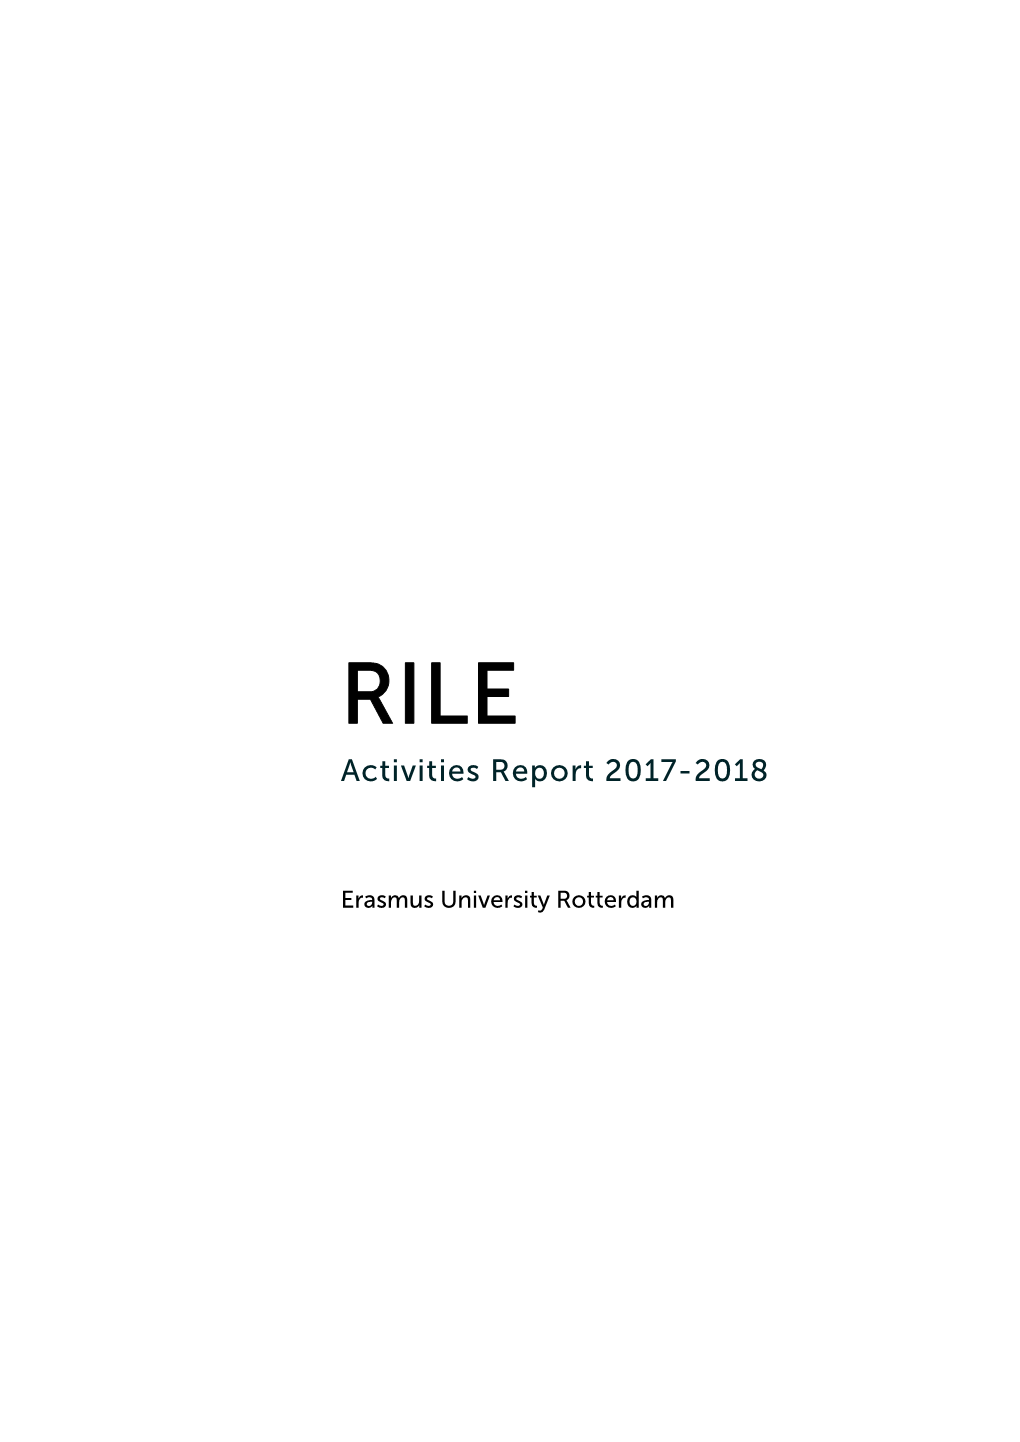 RILE Activities Report 2017-2018